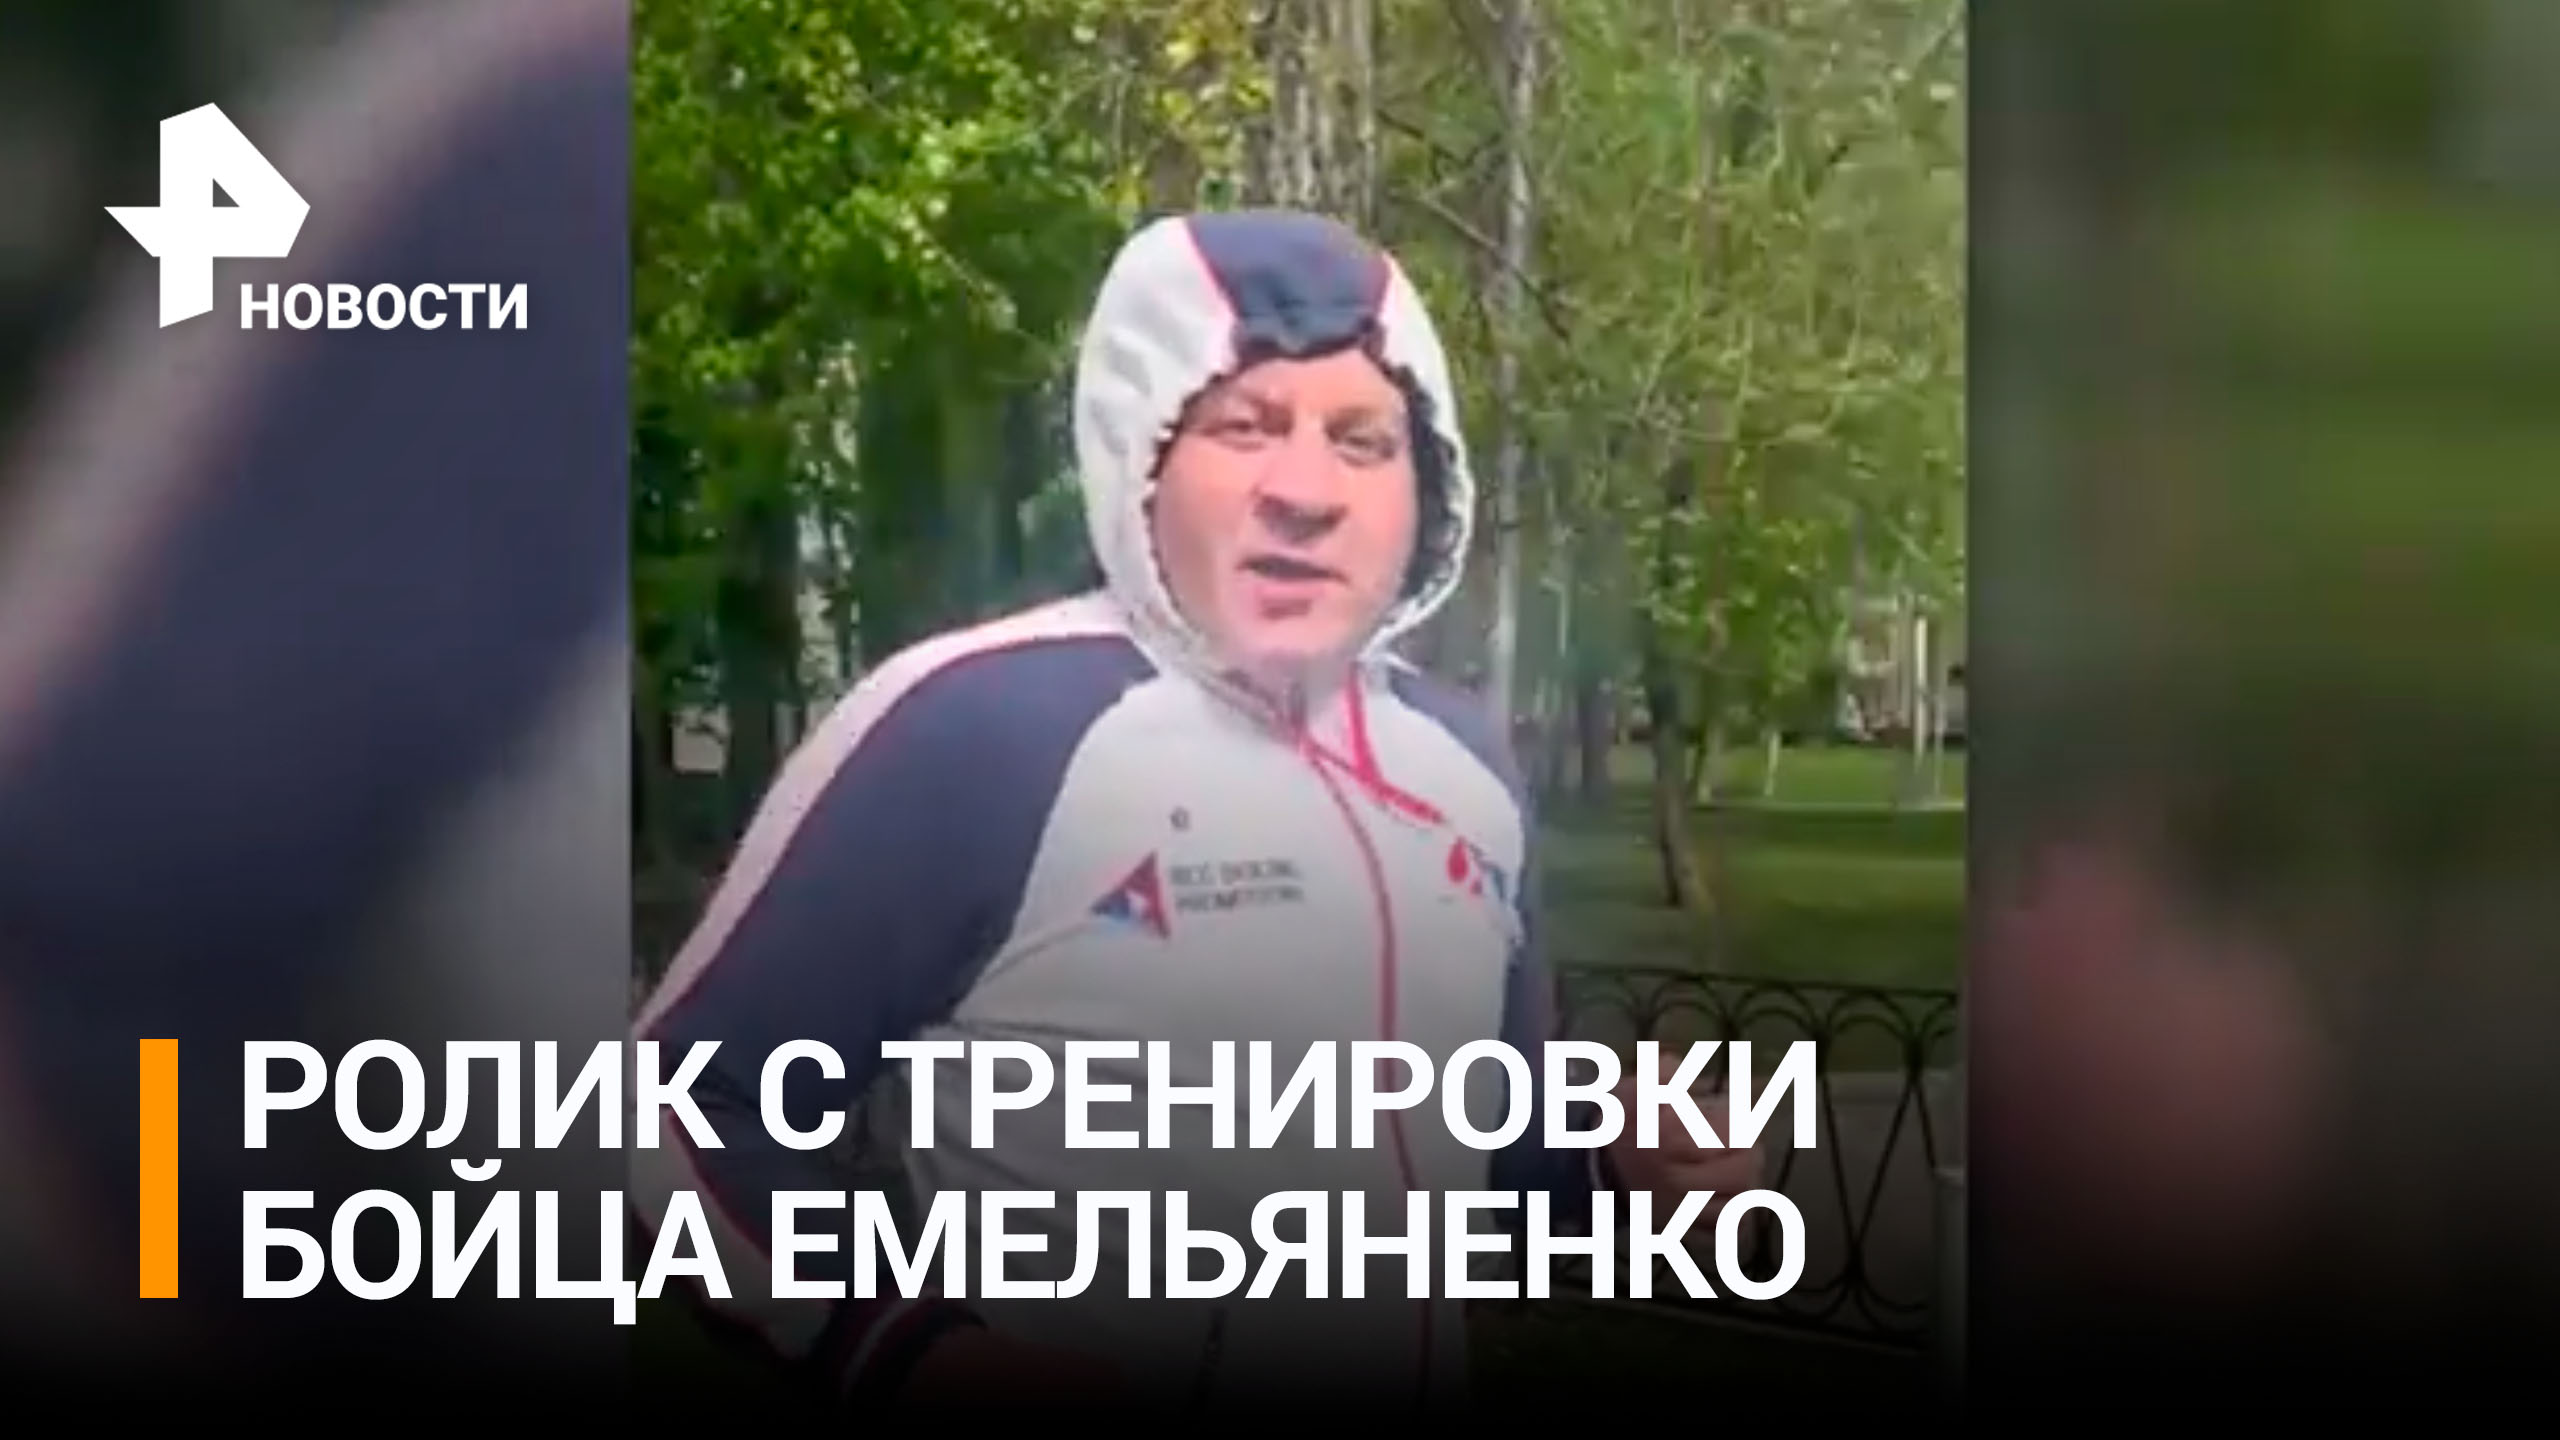 Емельяненко показал кадры подготовки к бою против Ершова / Бойцовский клуб РЕН